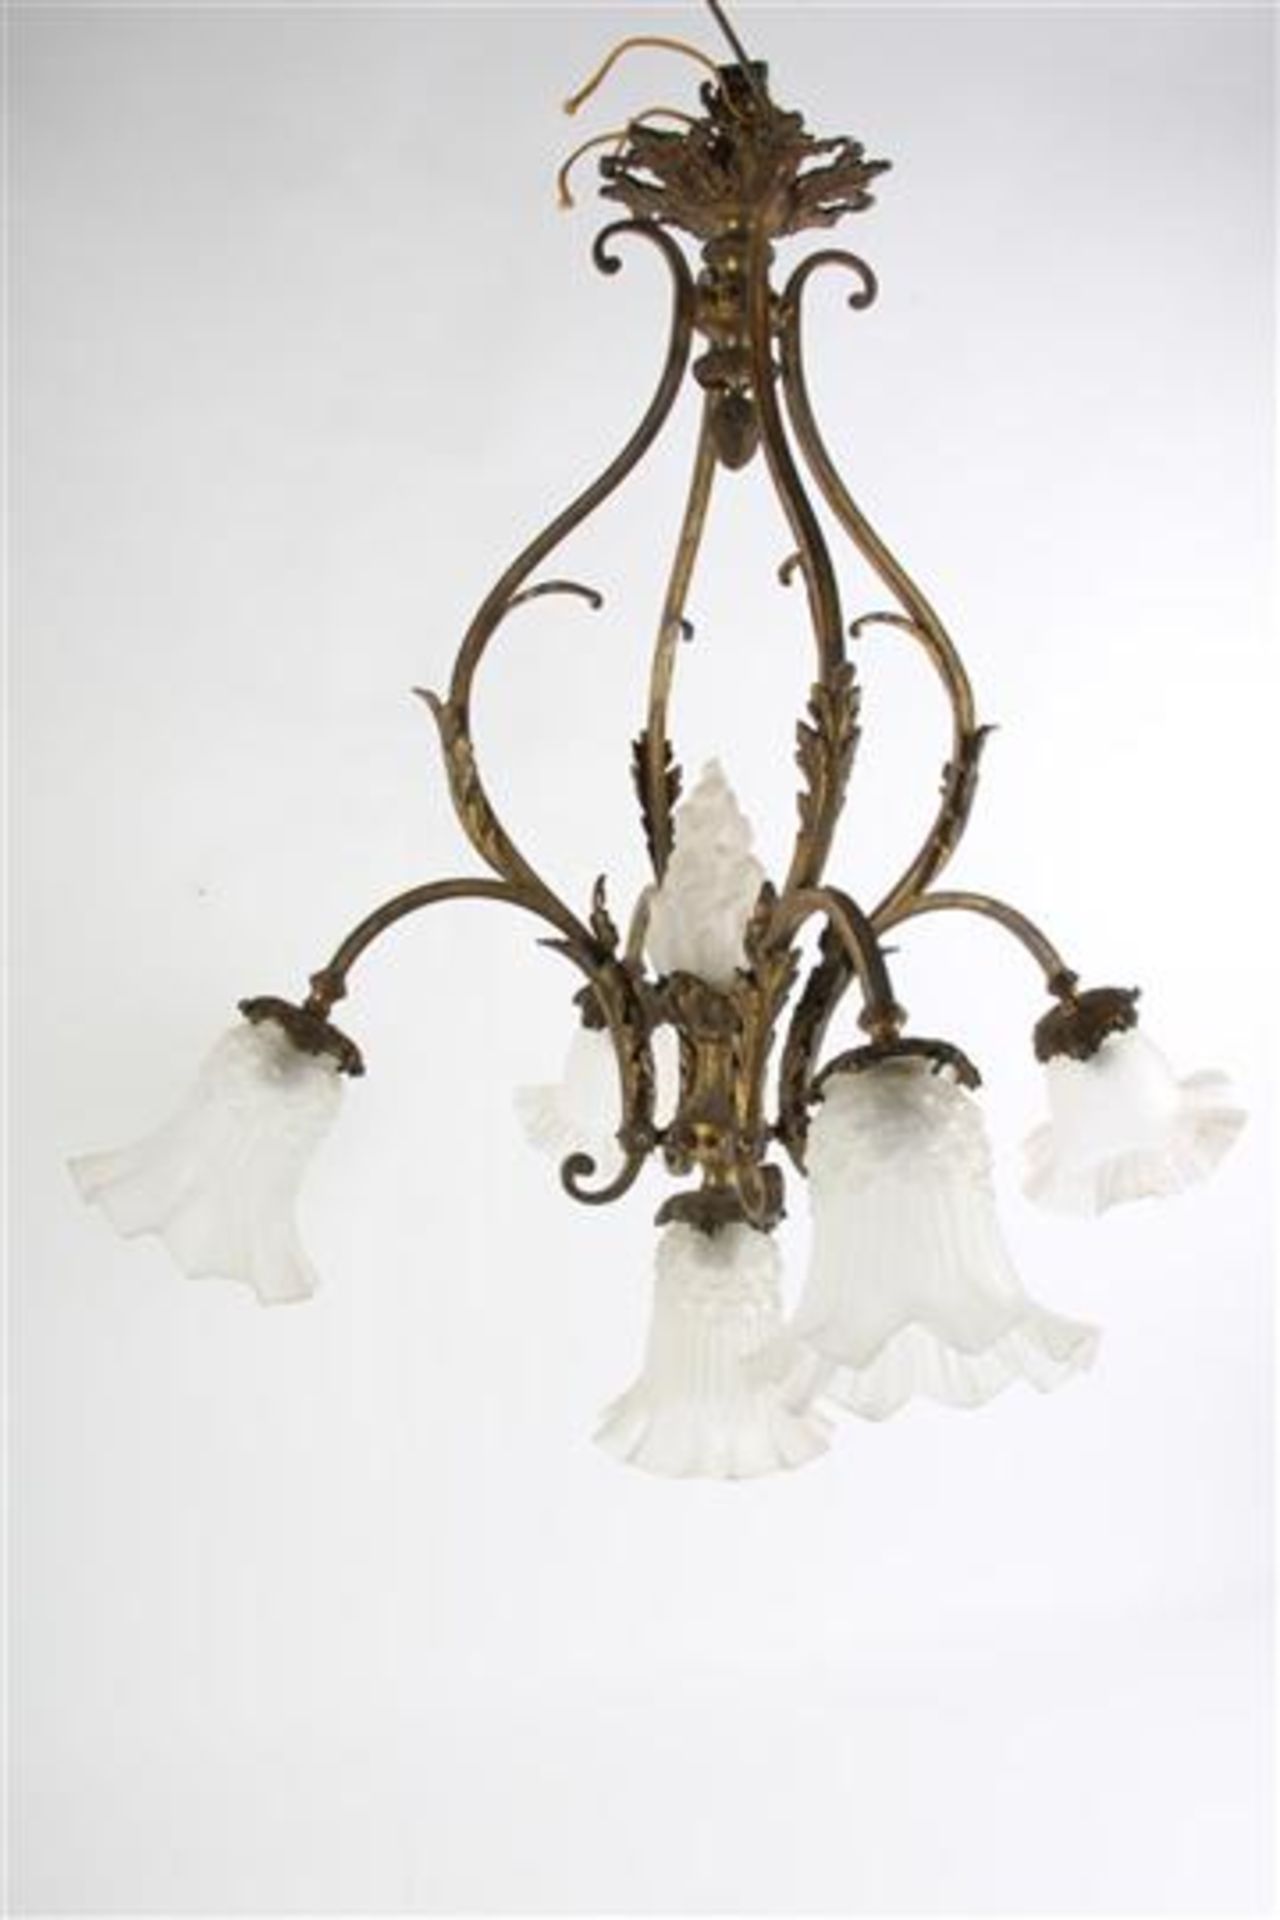 Vergulde chandelier met glazen kapjes, Frankrijk 19e eeuw, afkomstig uit het huis van Dr. Mezger